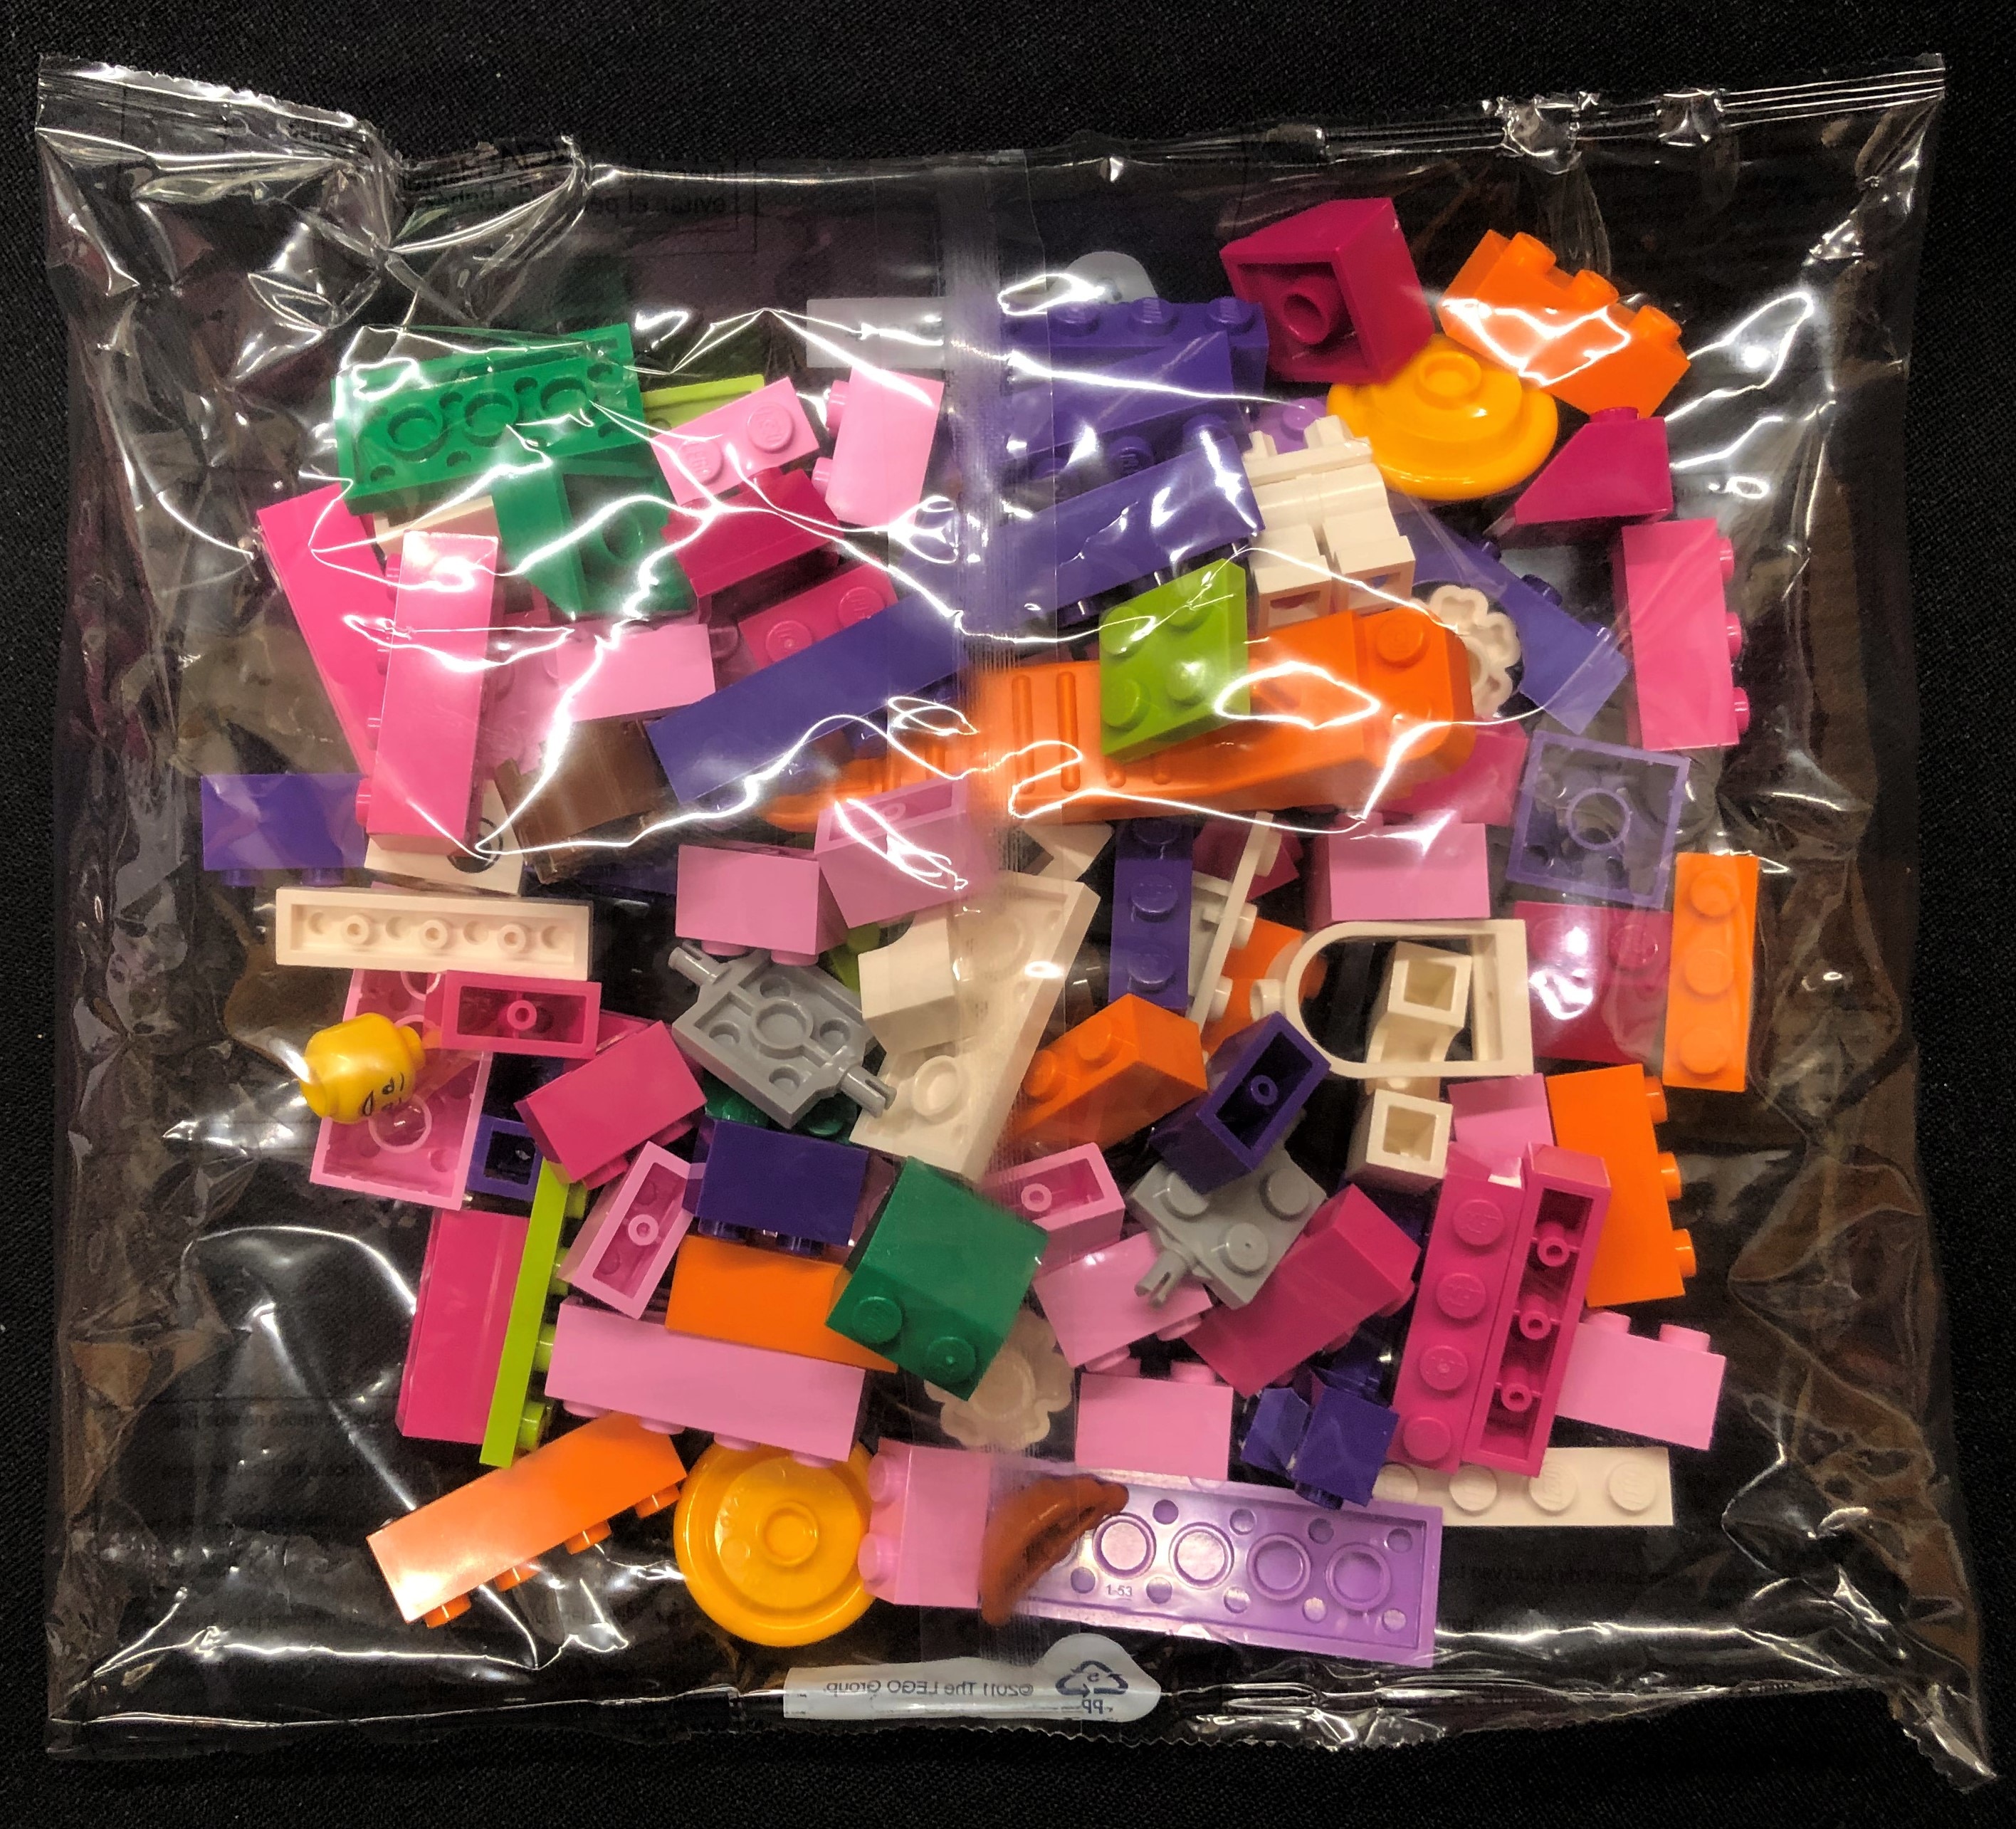 LEGO Bricks and More Pink Brick Box 4625